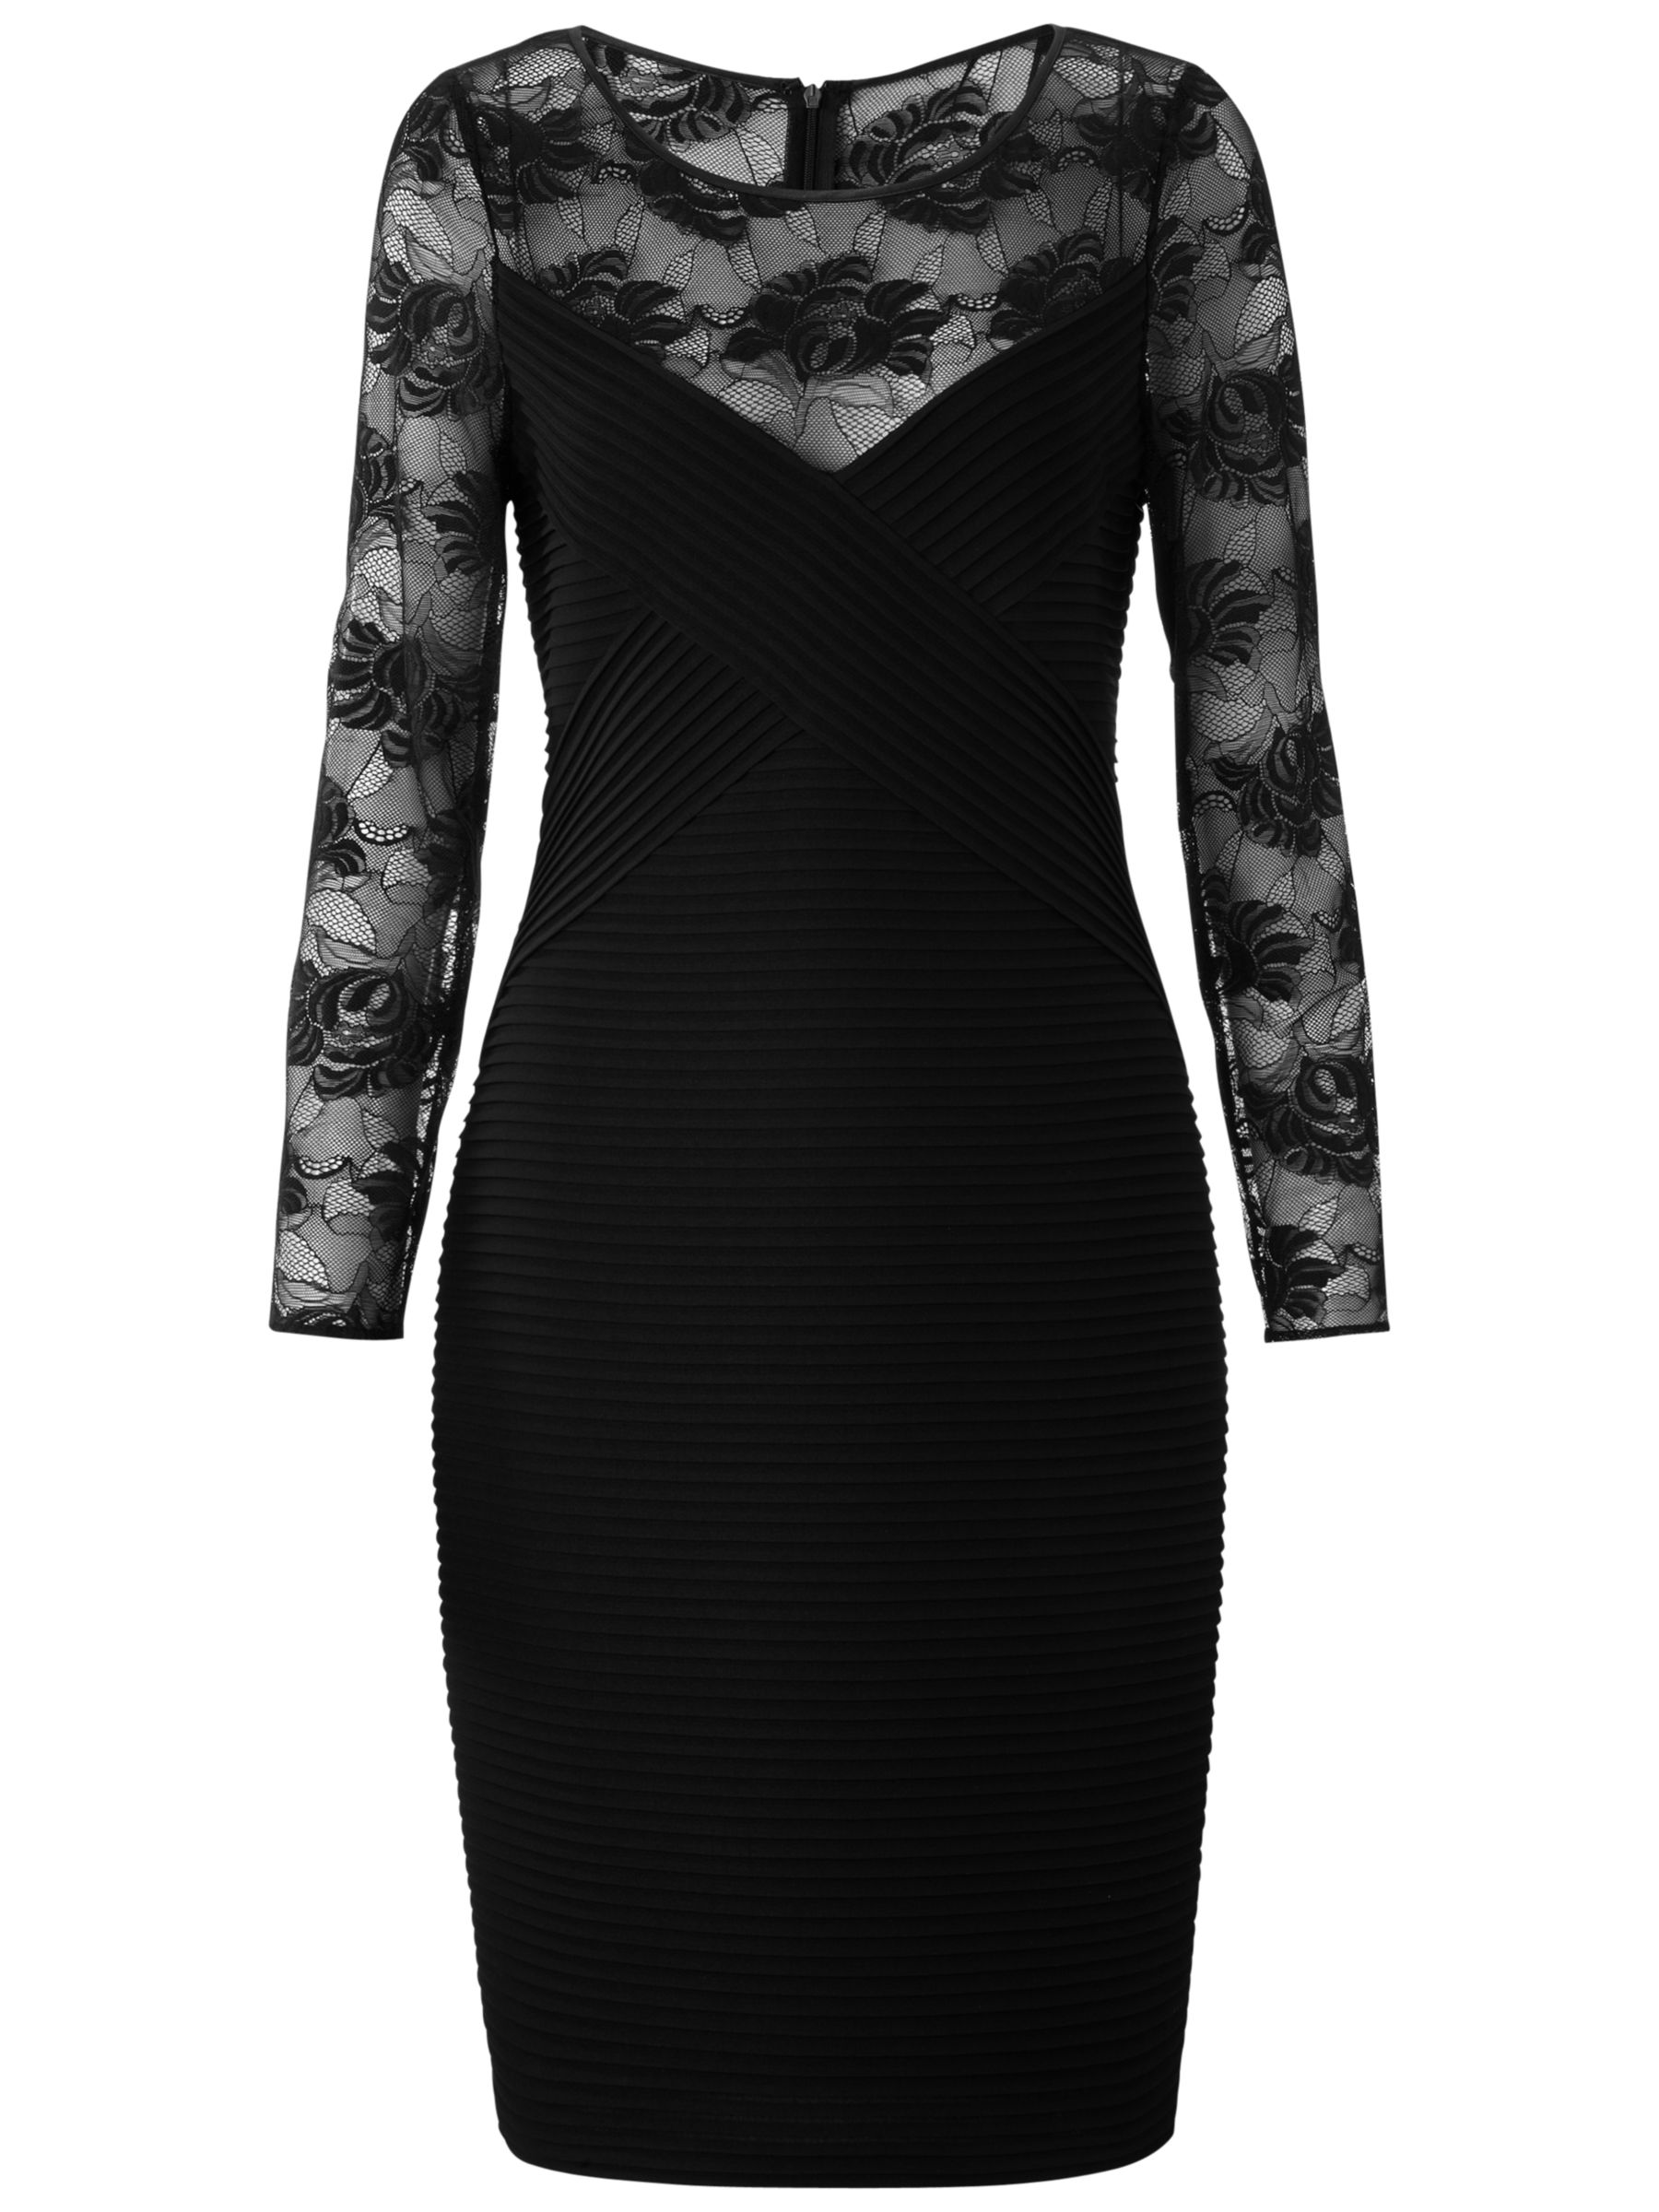 Gina Bacconi Pintuck Jersey Dress, Black